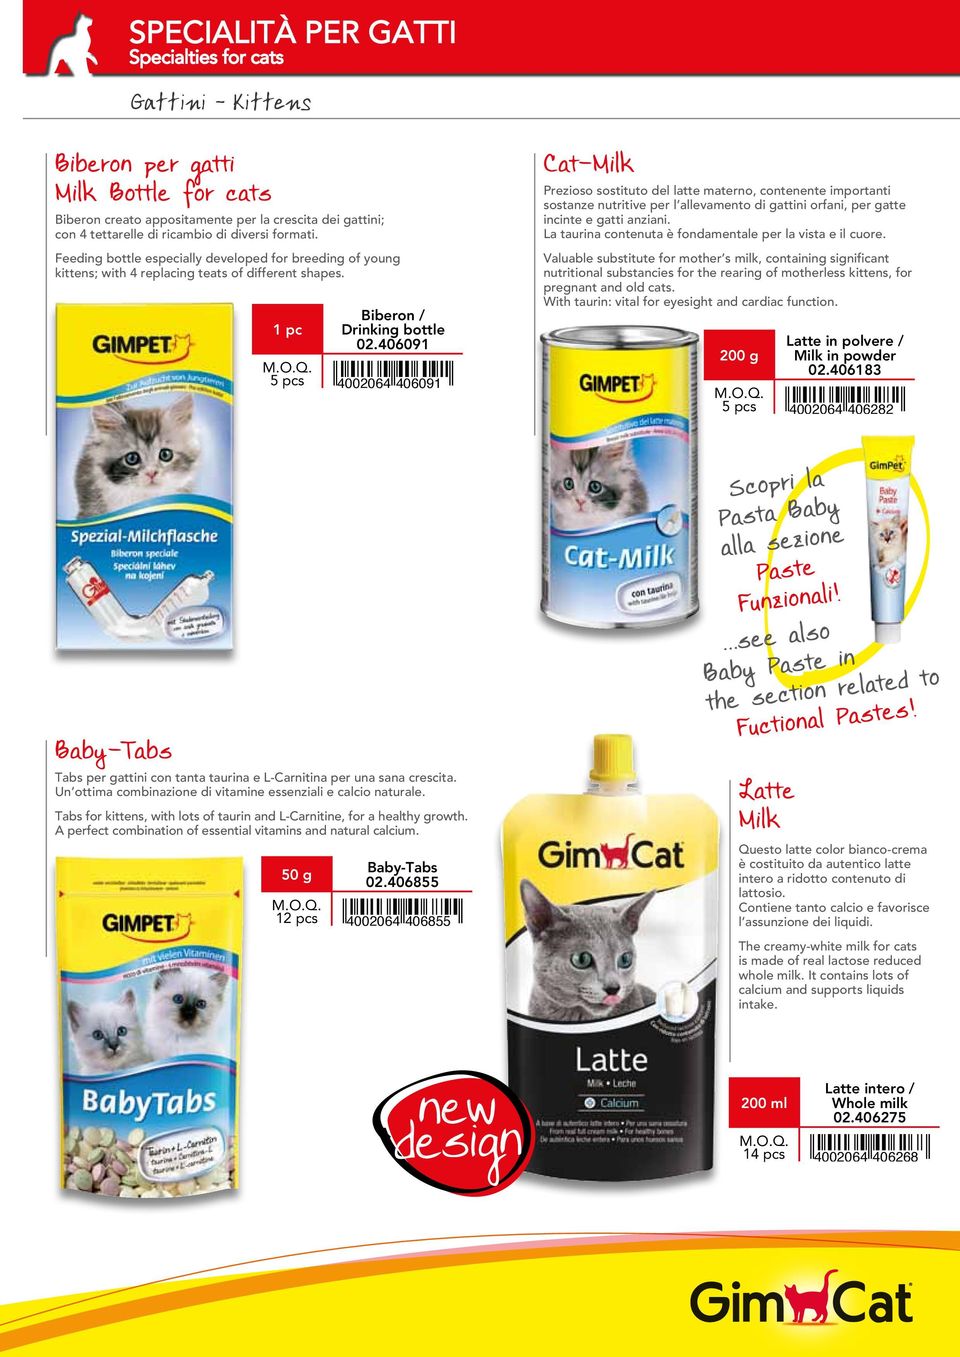 406091 5 pcs Cat-Milk Prezioso sostituto del latte materno, contenente importanti sostanze nutritive per l allevamento di gattini orfani, per gatte incinte e gatti anziani.